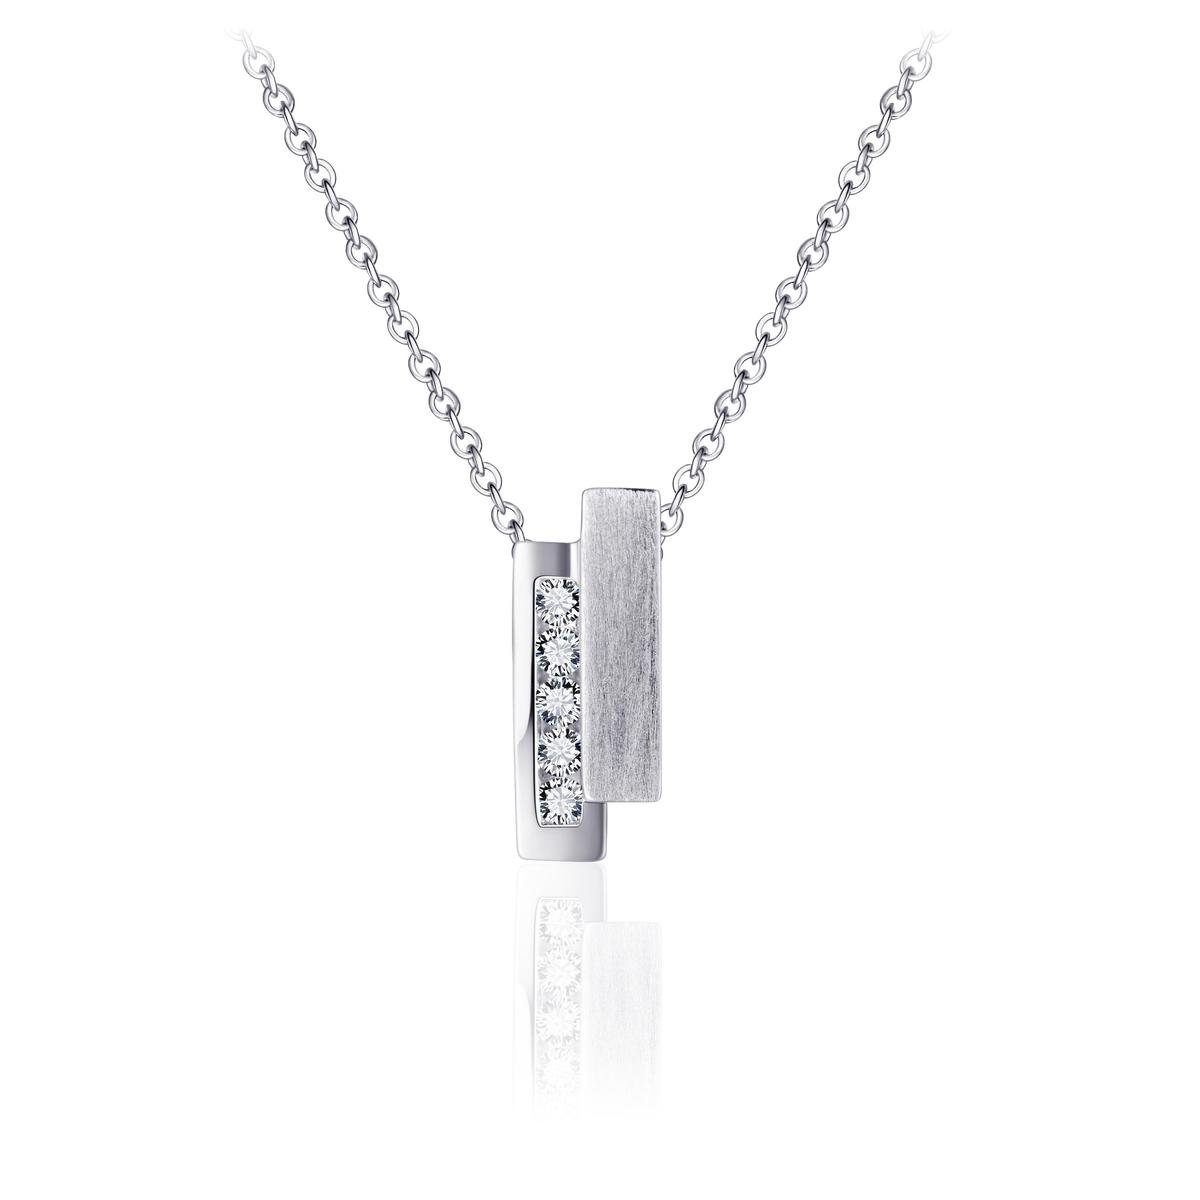 Jewels Inc. - Hanger incl. Ketting - Fantasie Strak gezet met Zirkonia - 16mm x 7mm - Lengte 42+3cm - Gerhodineerd Zilver 925